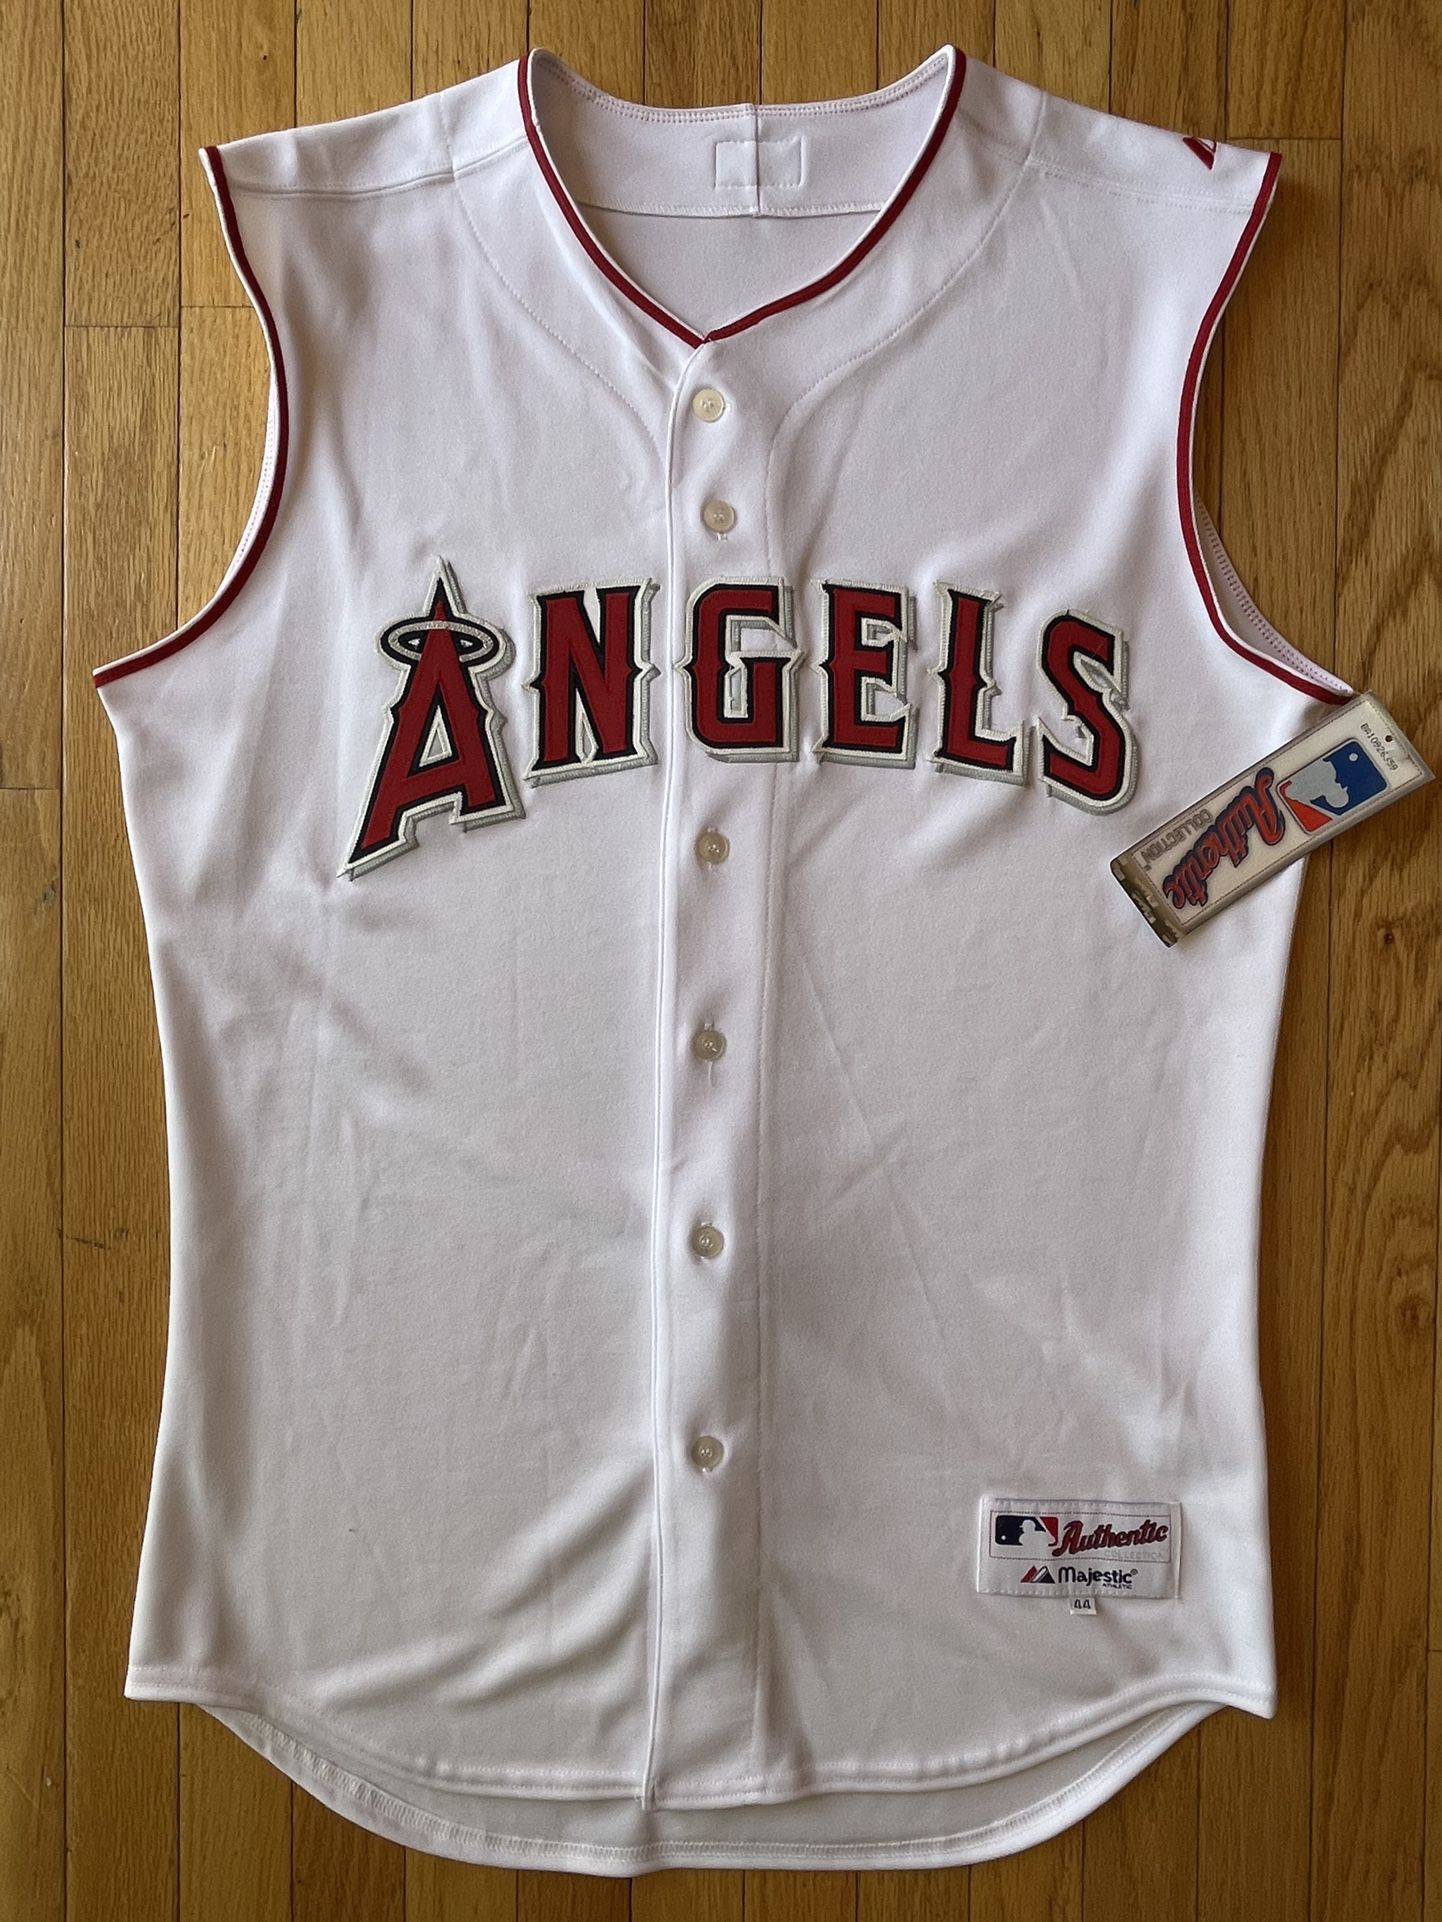 anaheim angels jersey 2002